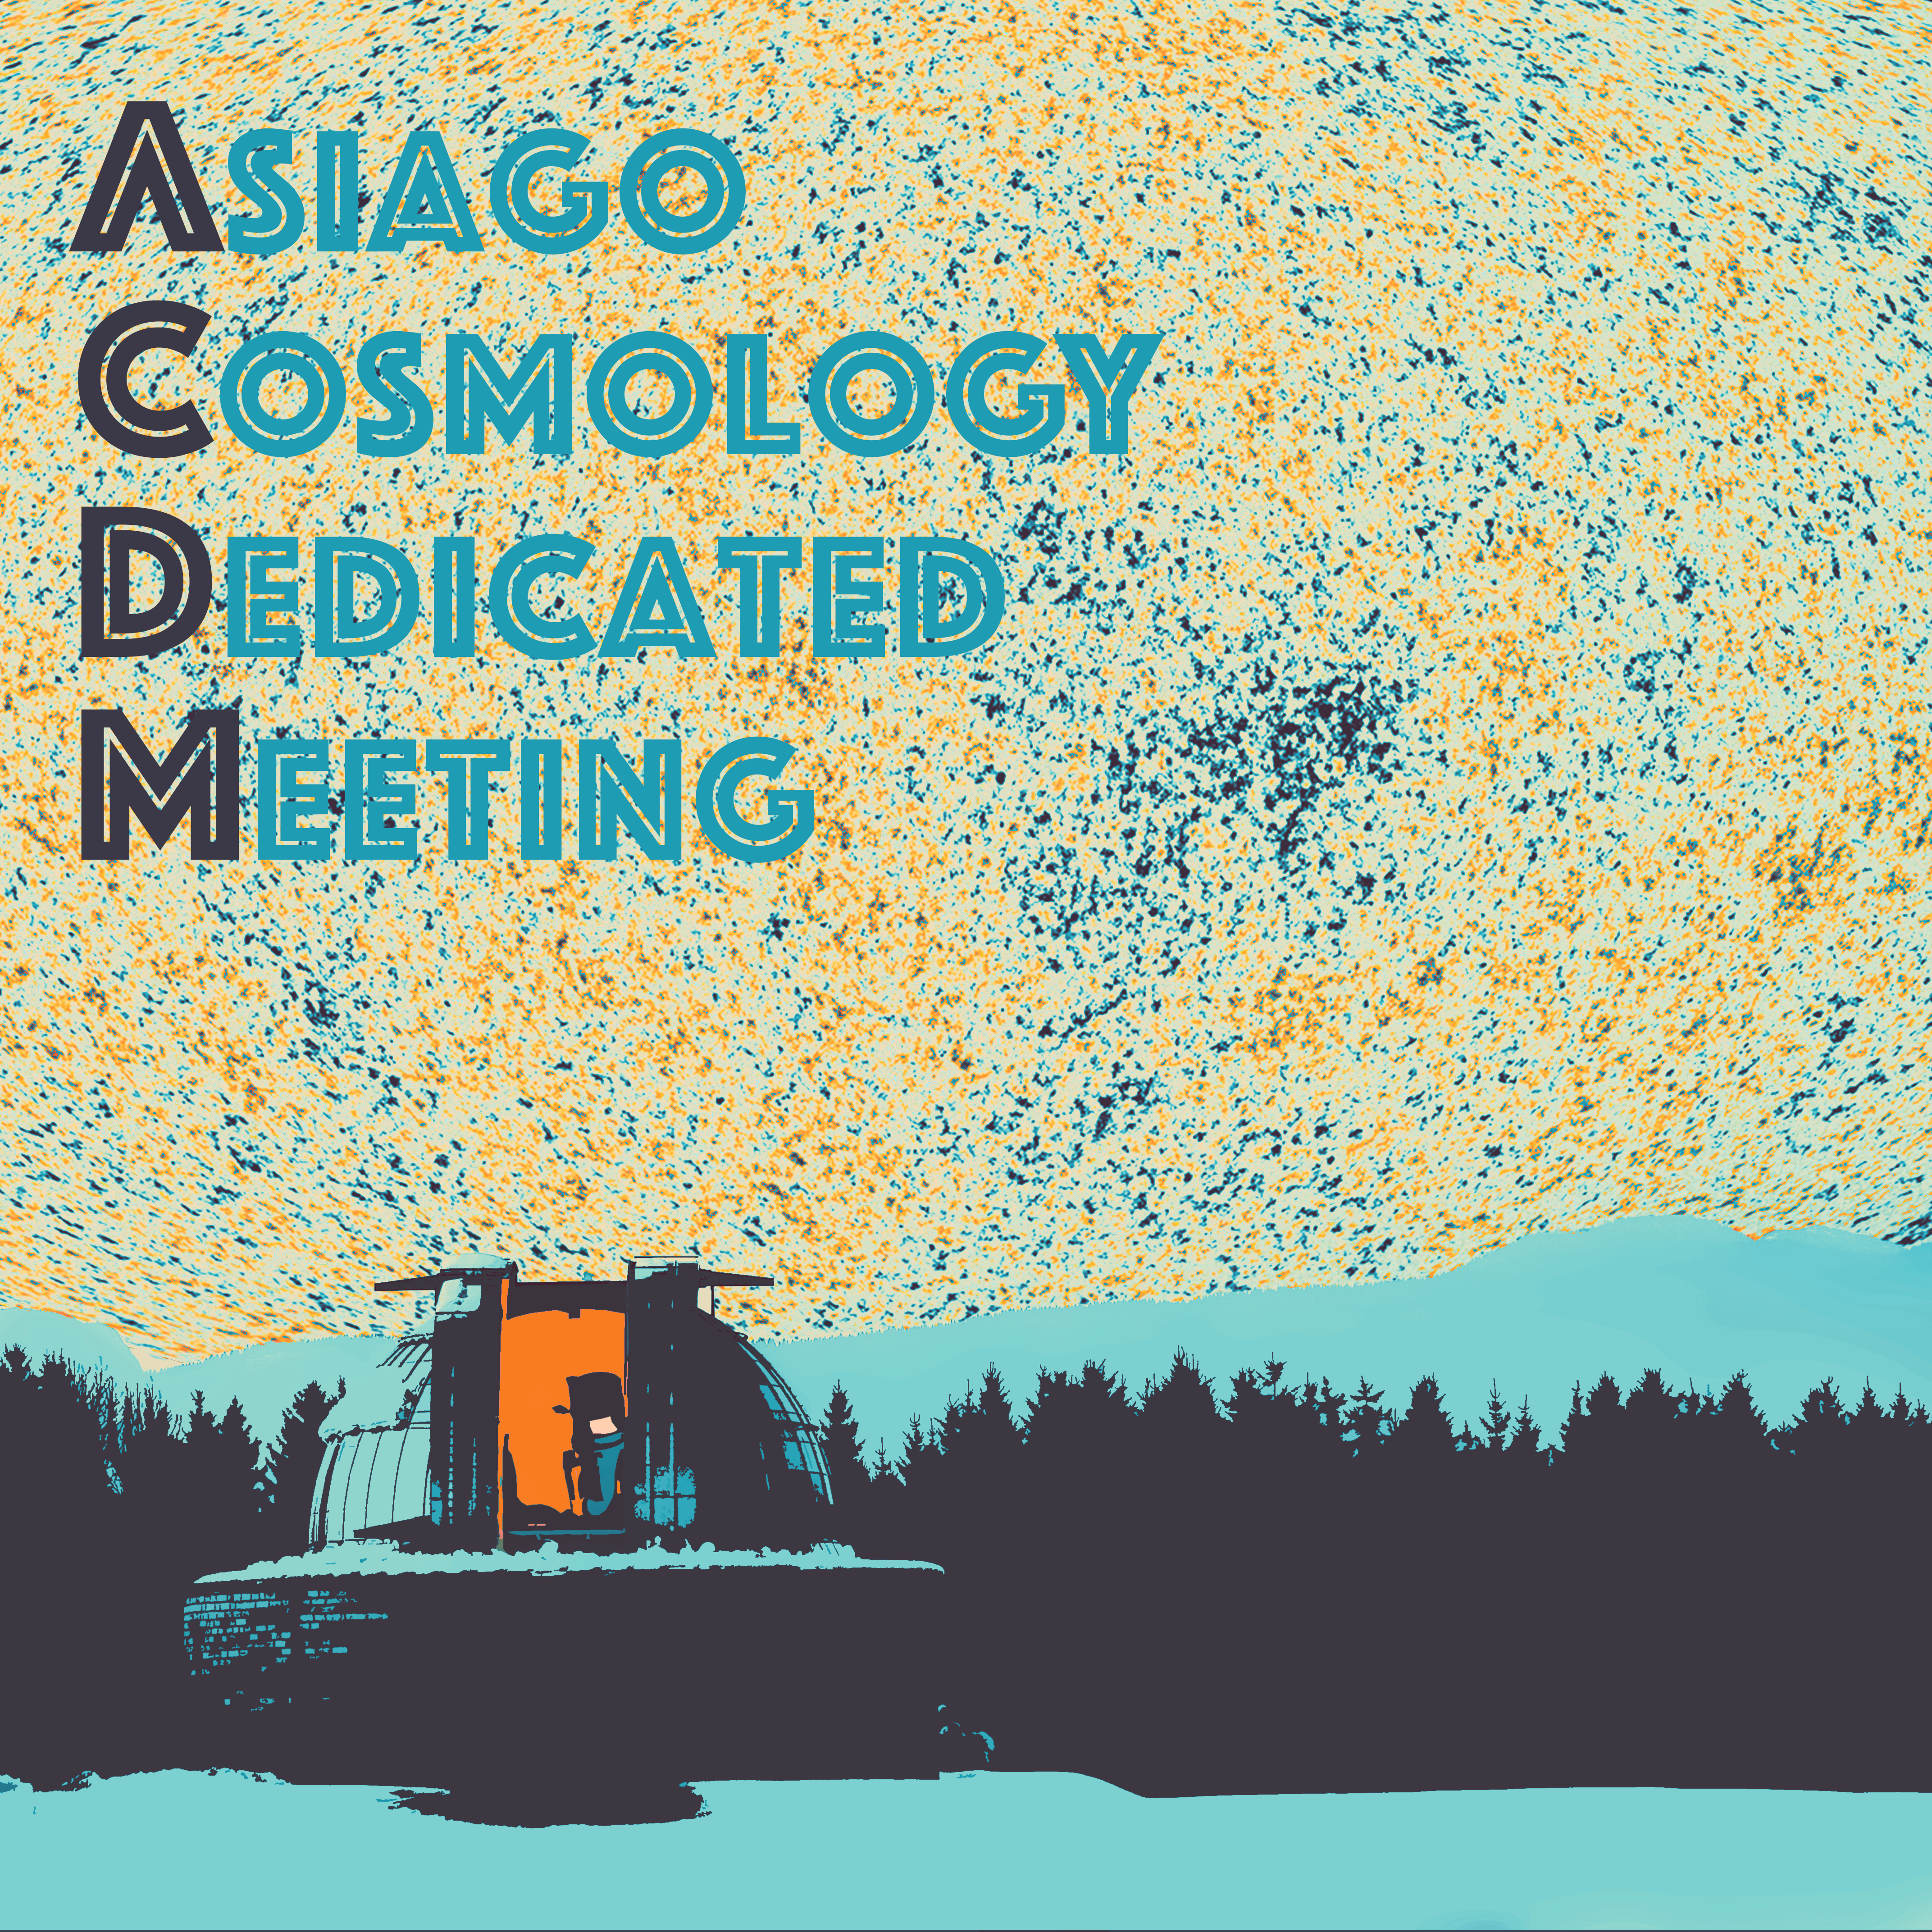 Asiago Cosmology Dedicated Meeting